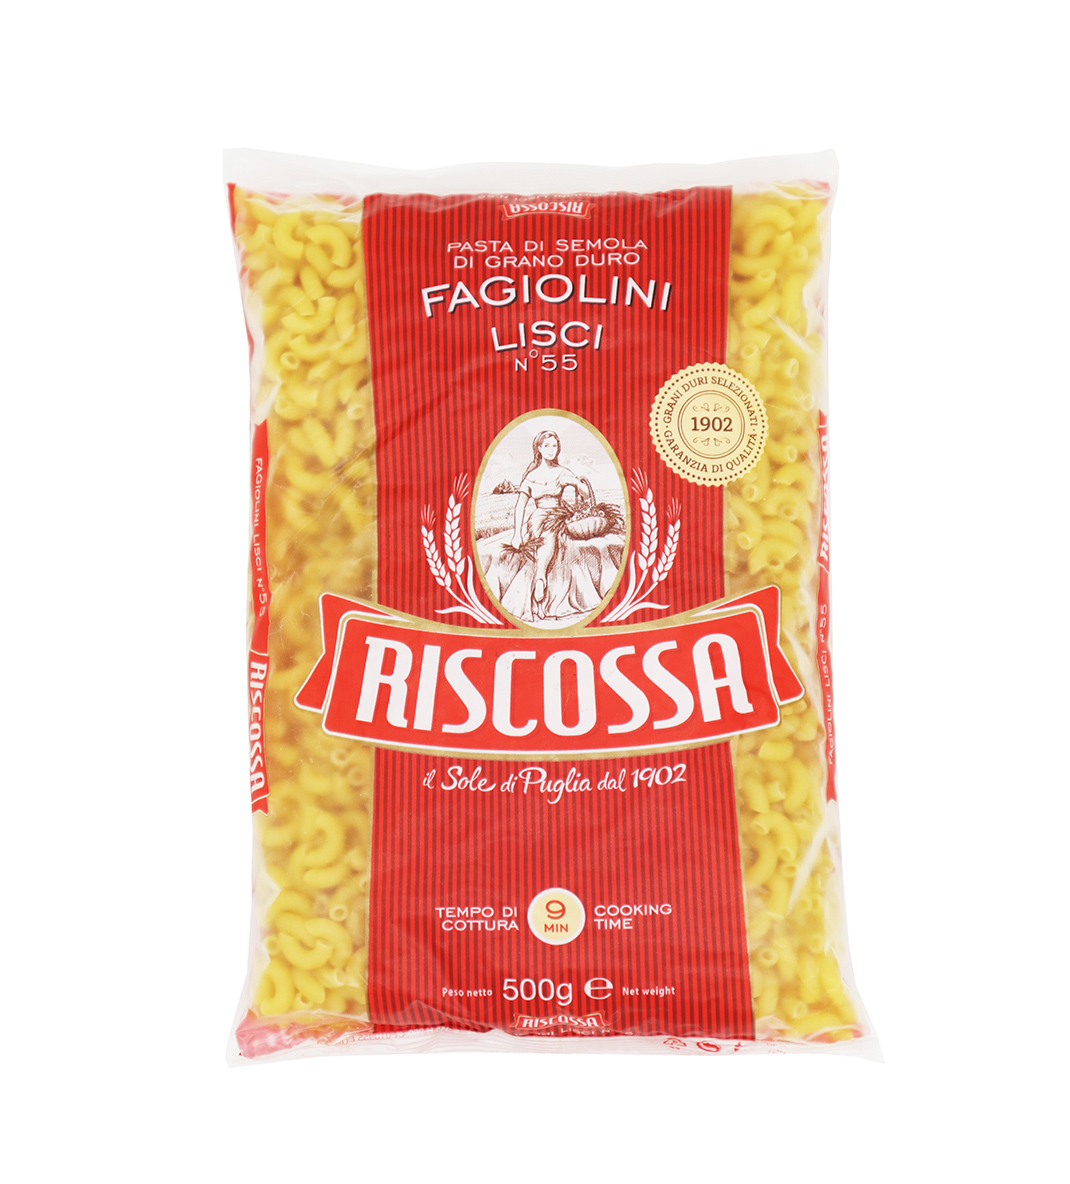 RISCOSSA Fagiolini Lisci No.55 